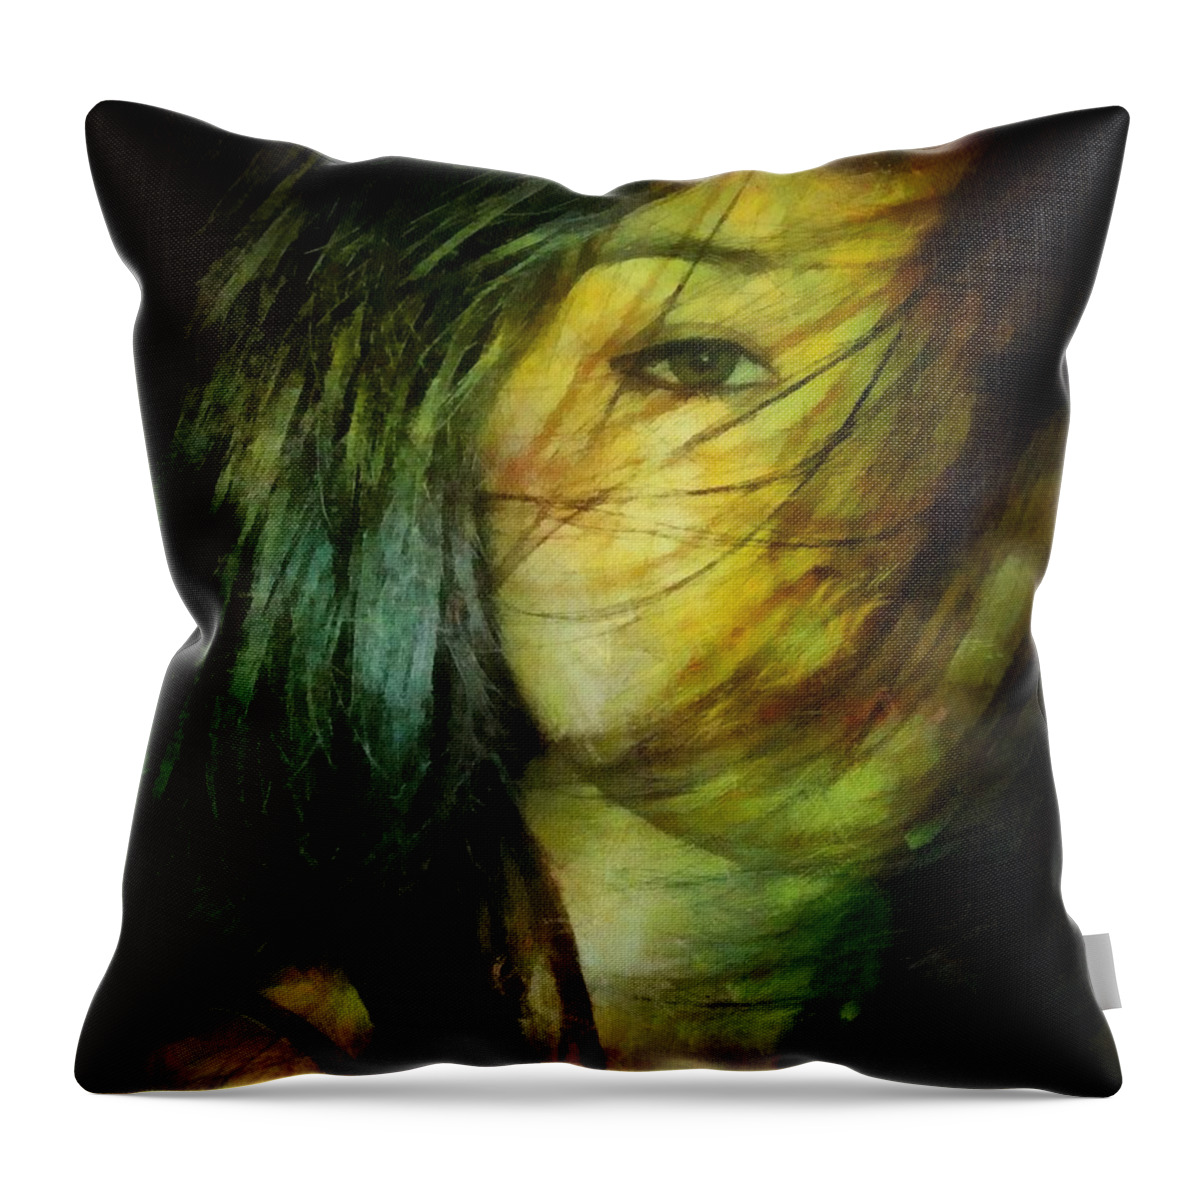 Woman Throw Pillow featuring the digital art Windswept #2 by Gun Legler